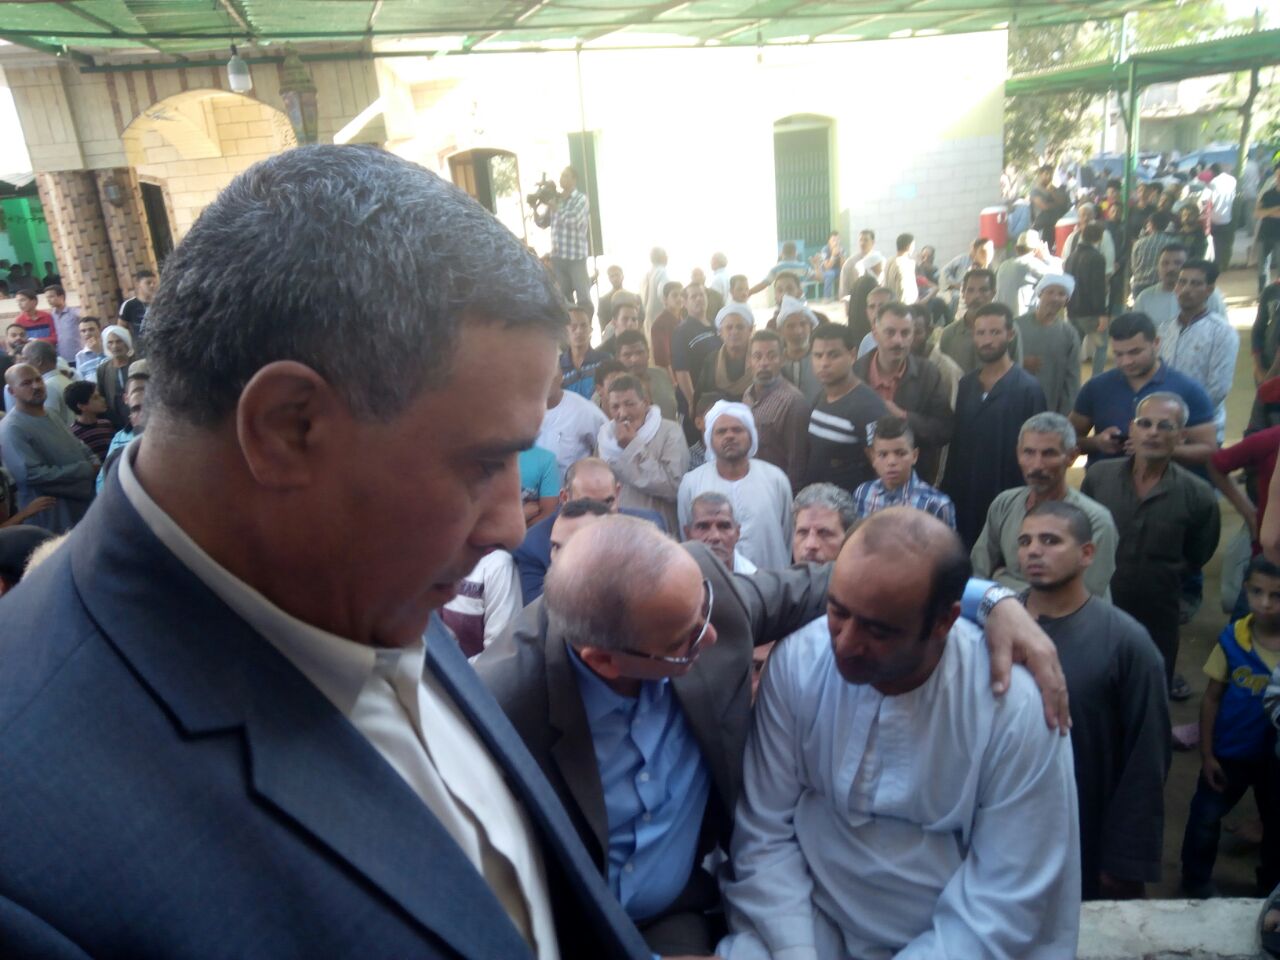 جنازه عسكرية لشهيد الشرطة بمسقط رأسه بقرية القشيش بشبين القناطر (3)